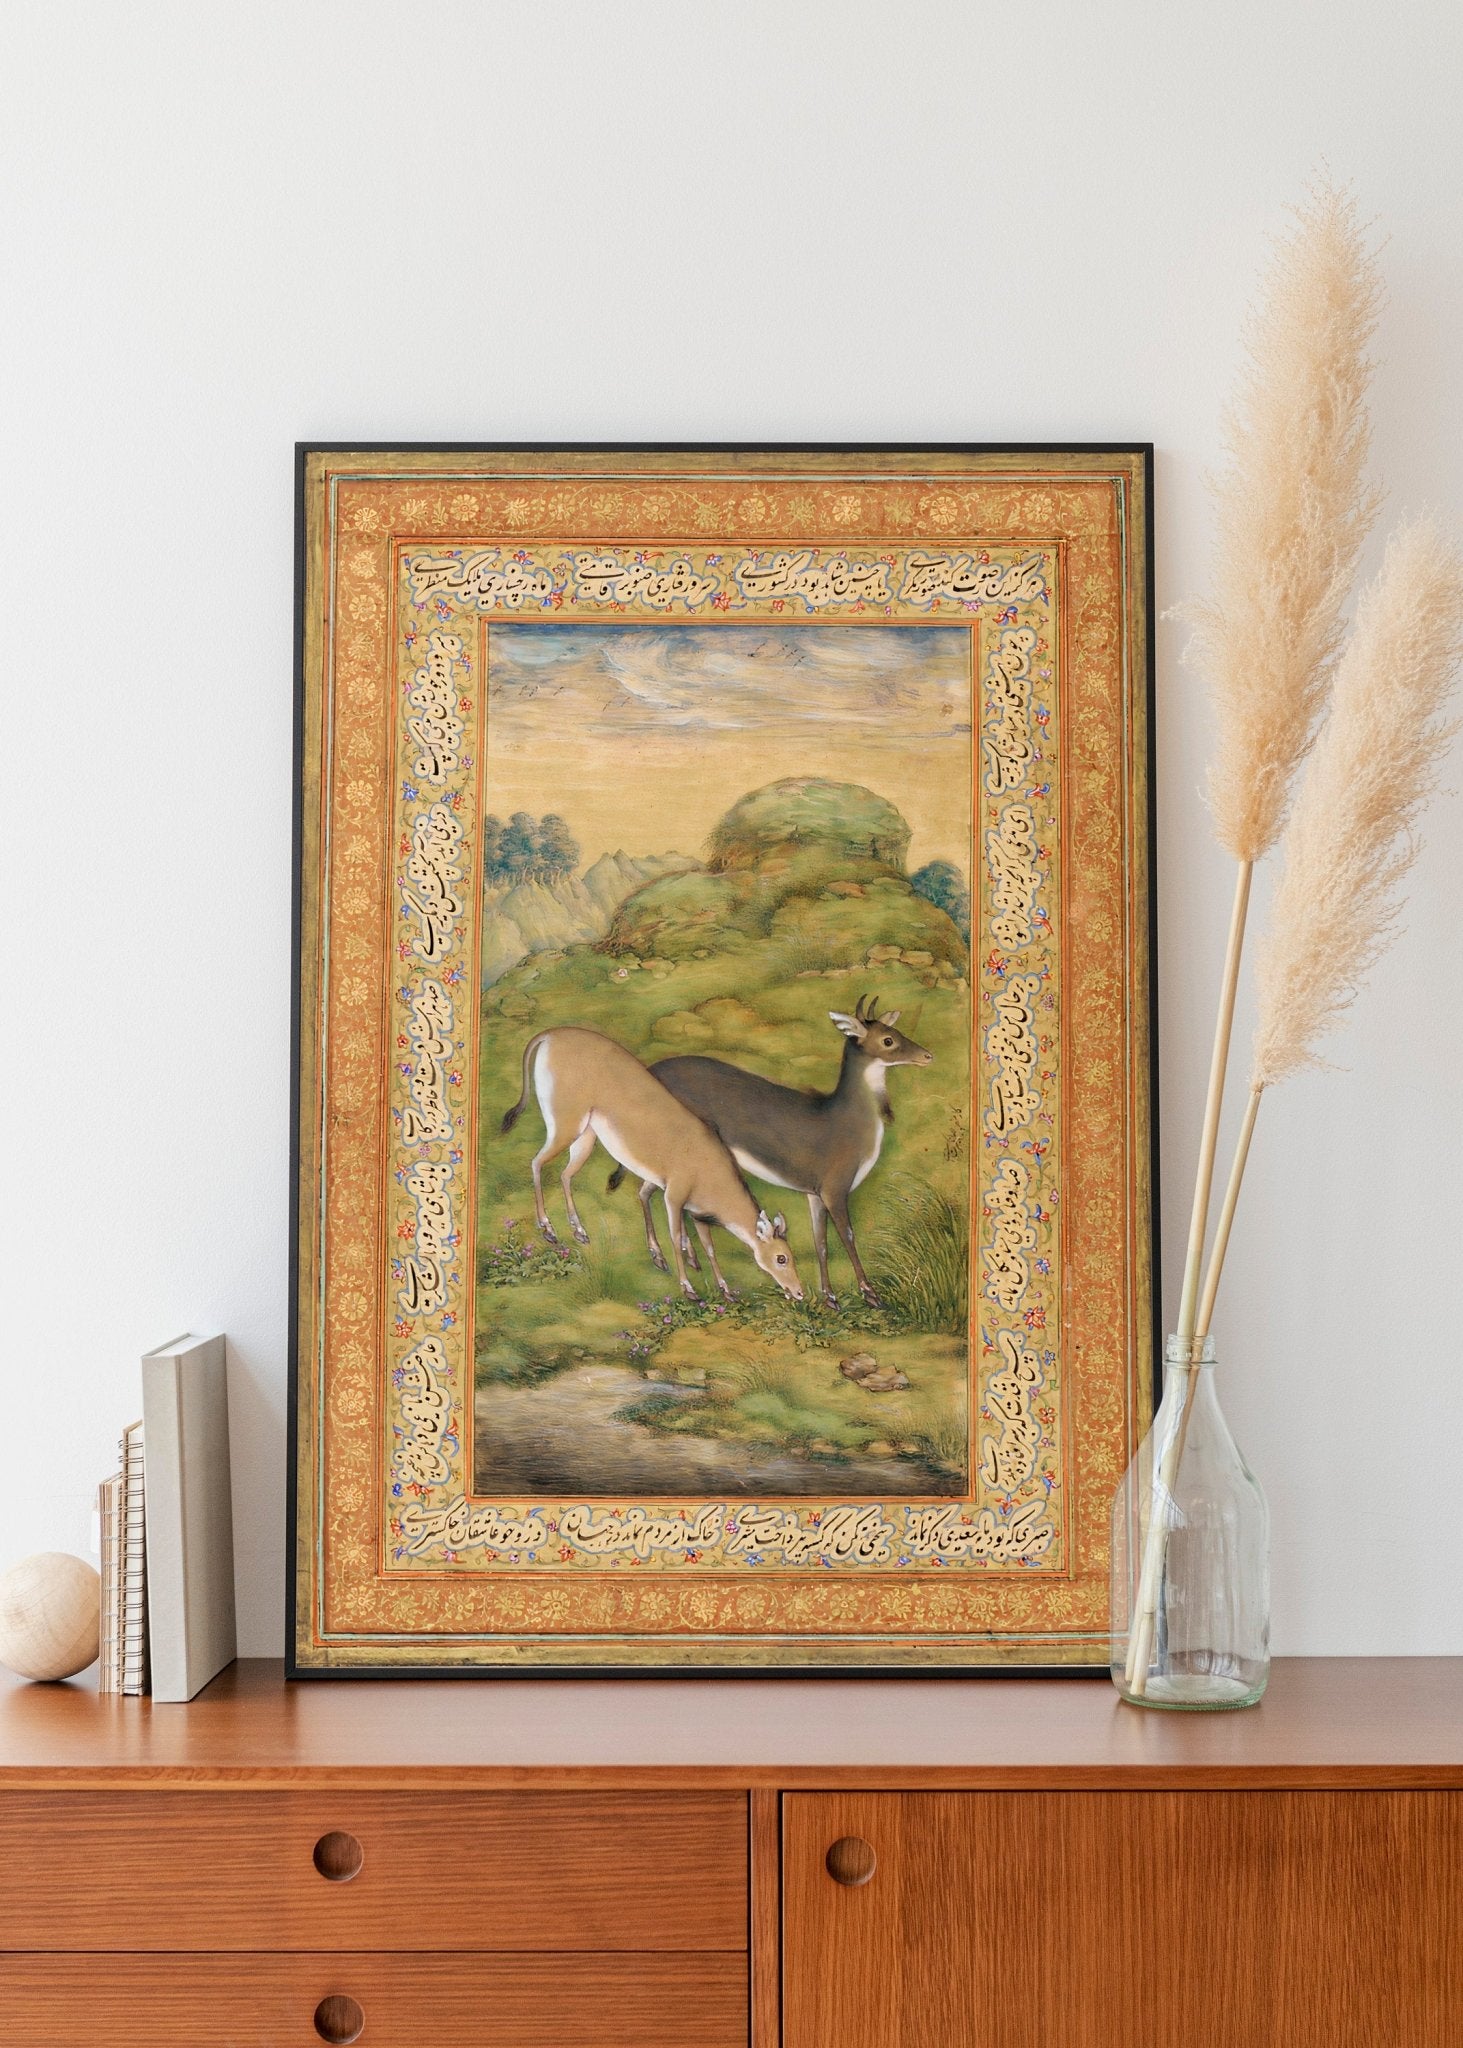 Set of 3 - Traditional Persian Birds & Deer Art - Pathos Studio - Posters, Prints, & Visual Artwork